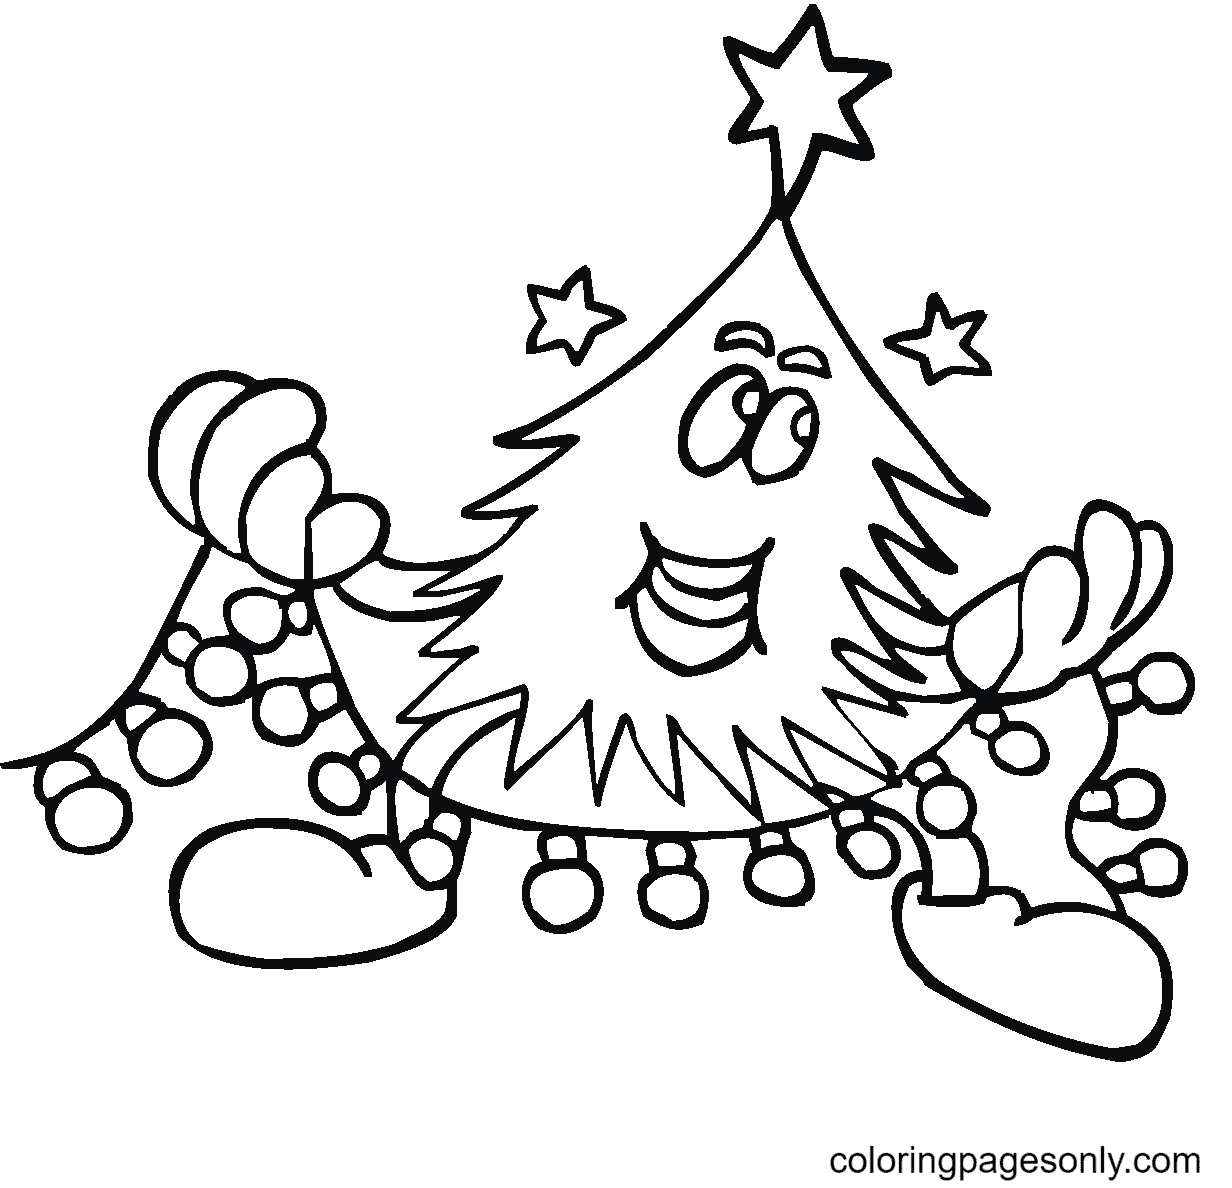 Christmas Tree And Christmas Lights Image For Kids Coloring Page